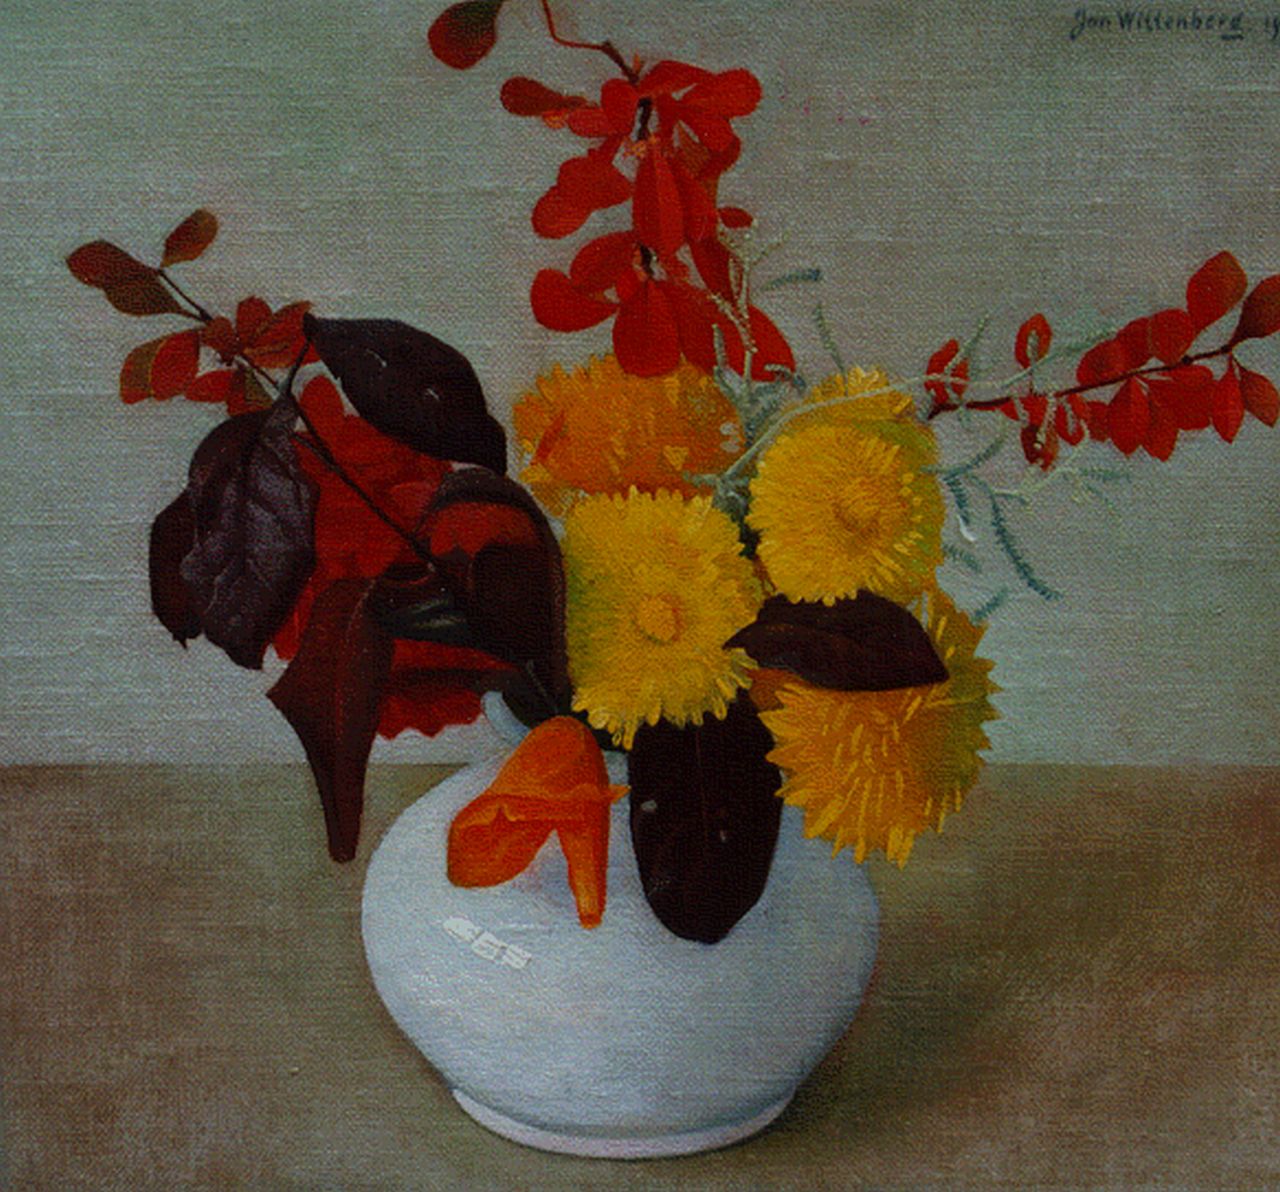 Wittenberg J.H.W.  | 'Jan' Hendrik Willem Wittenberg, A colourful bouquet, Öl auf Leinwand auf Holz 22,5 x 24,5 cm, signed u.r. und dated 1940